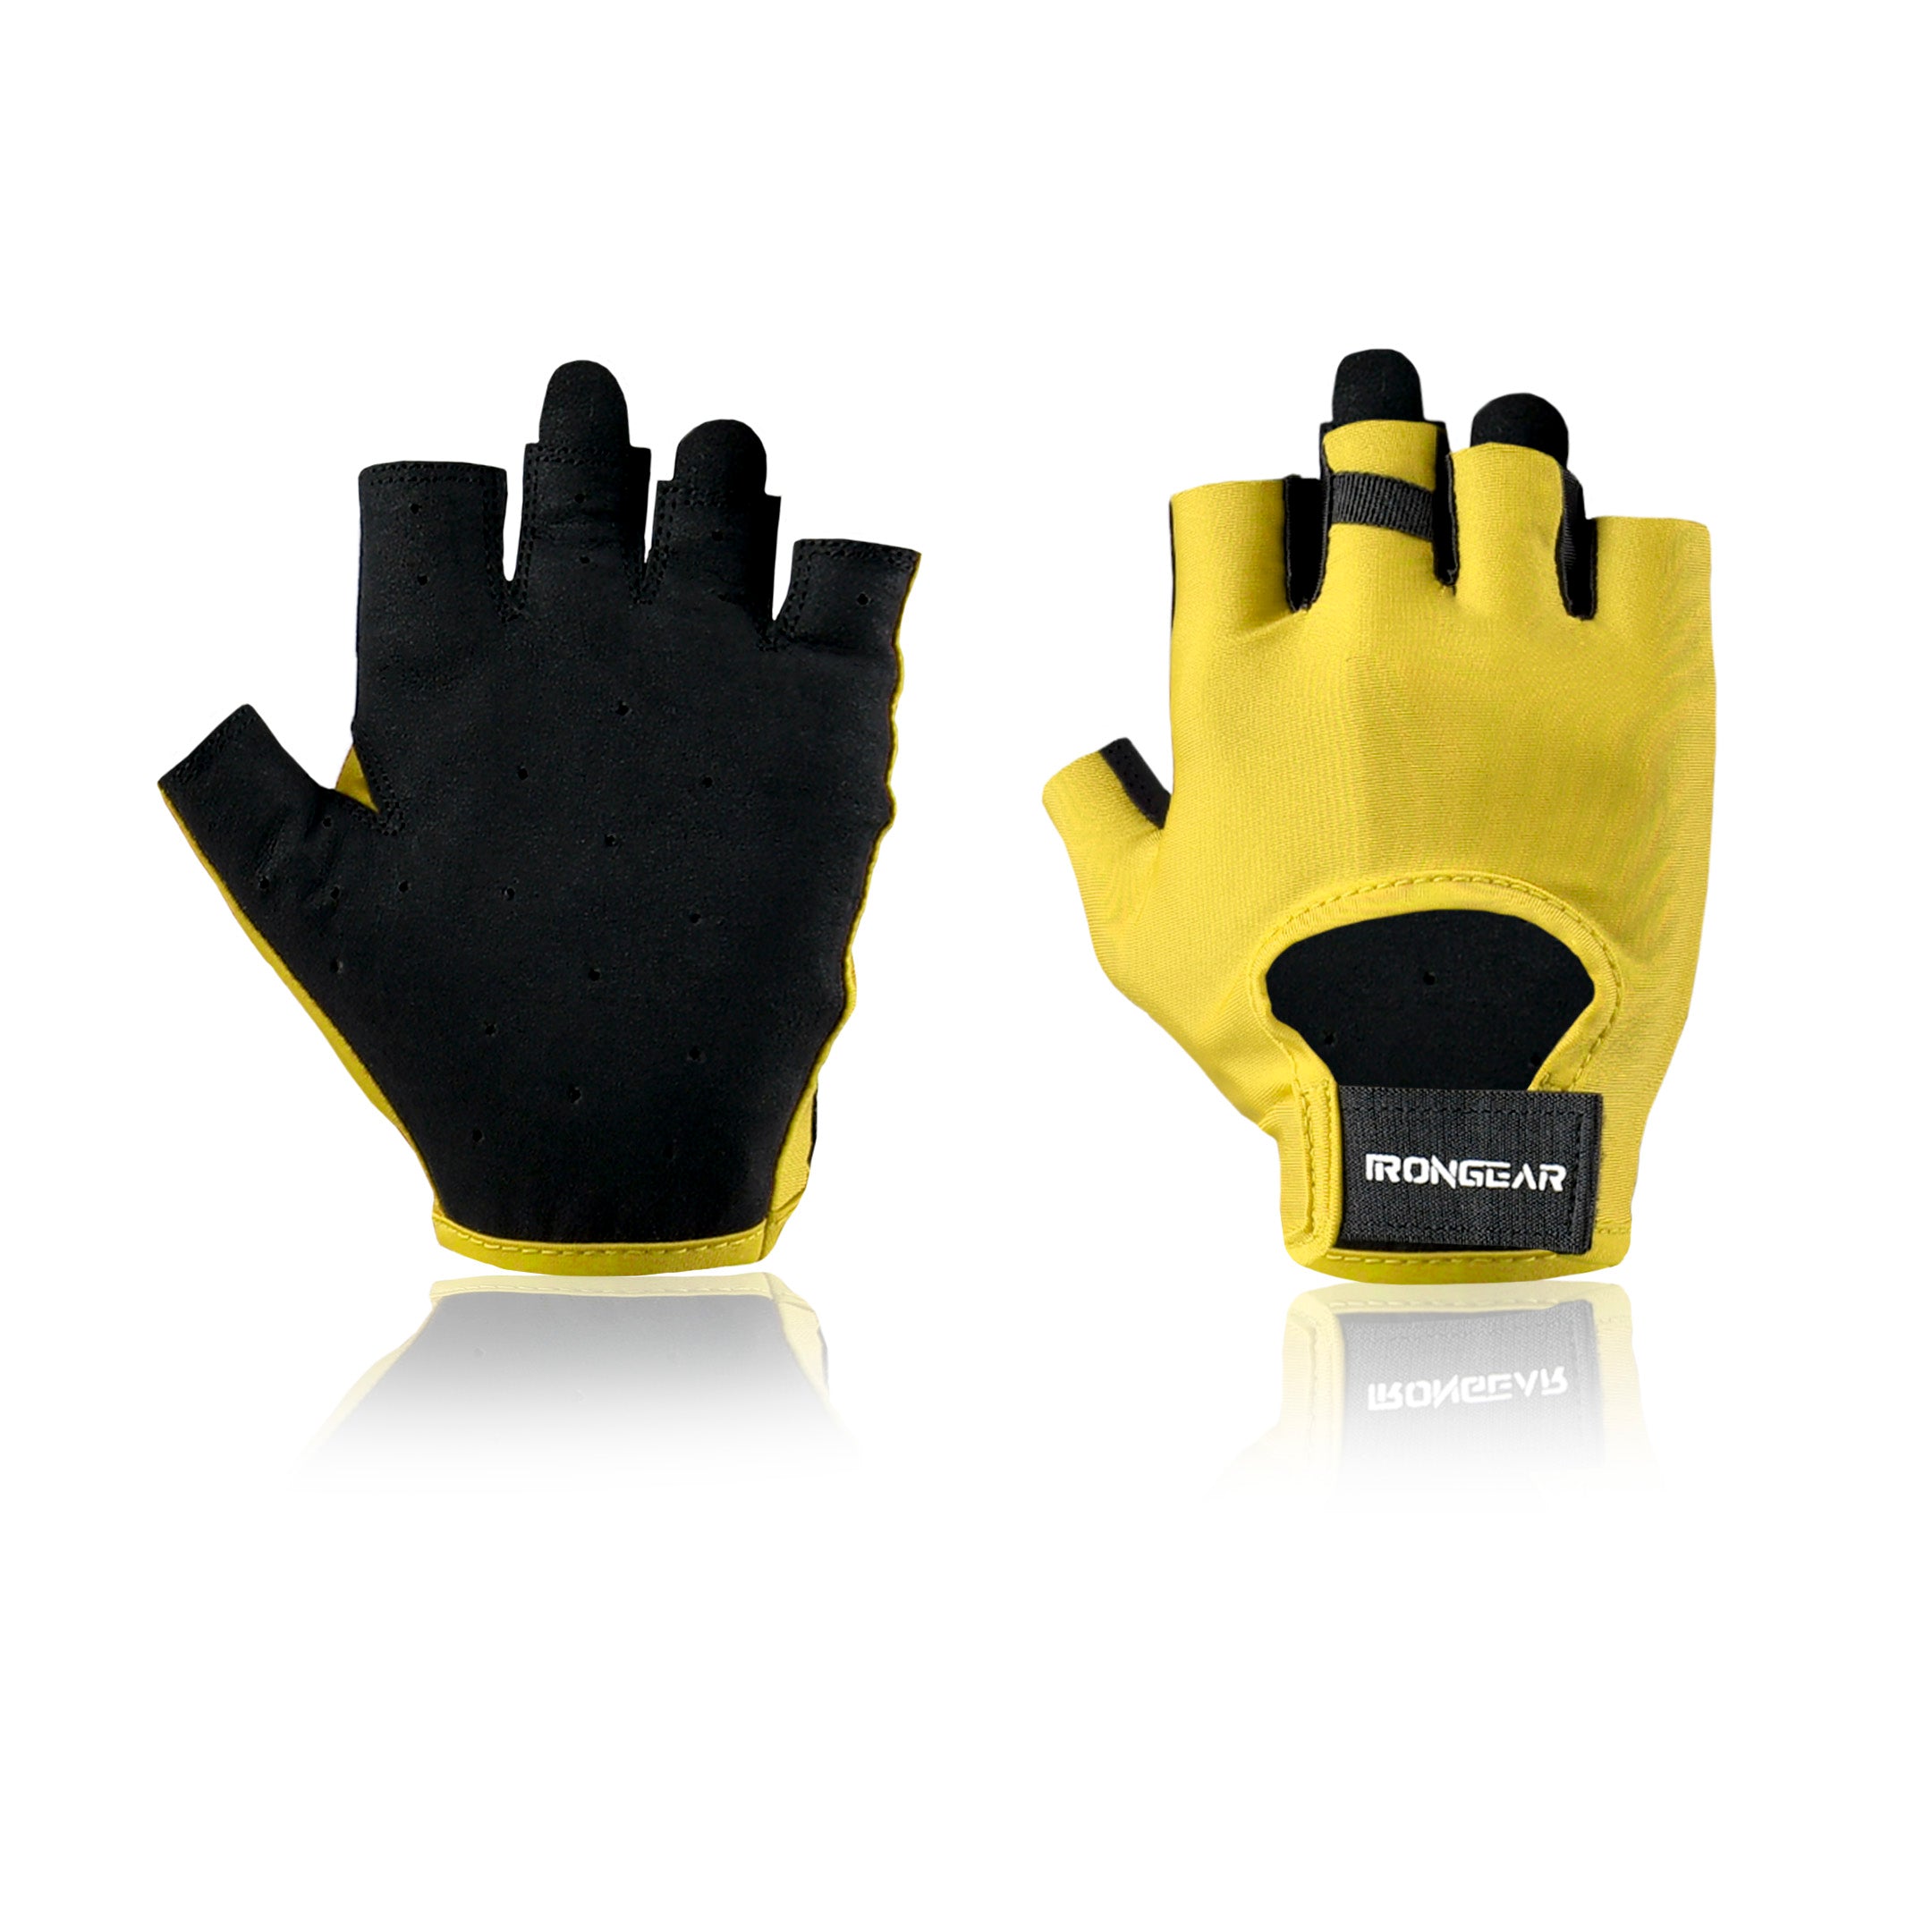 Agility Gloves